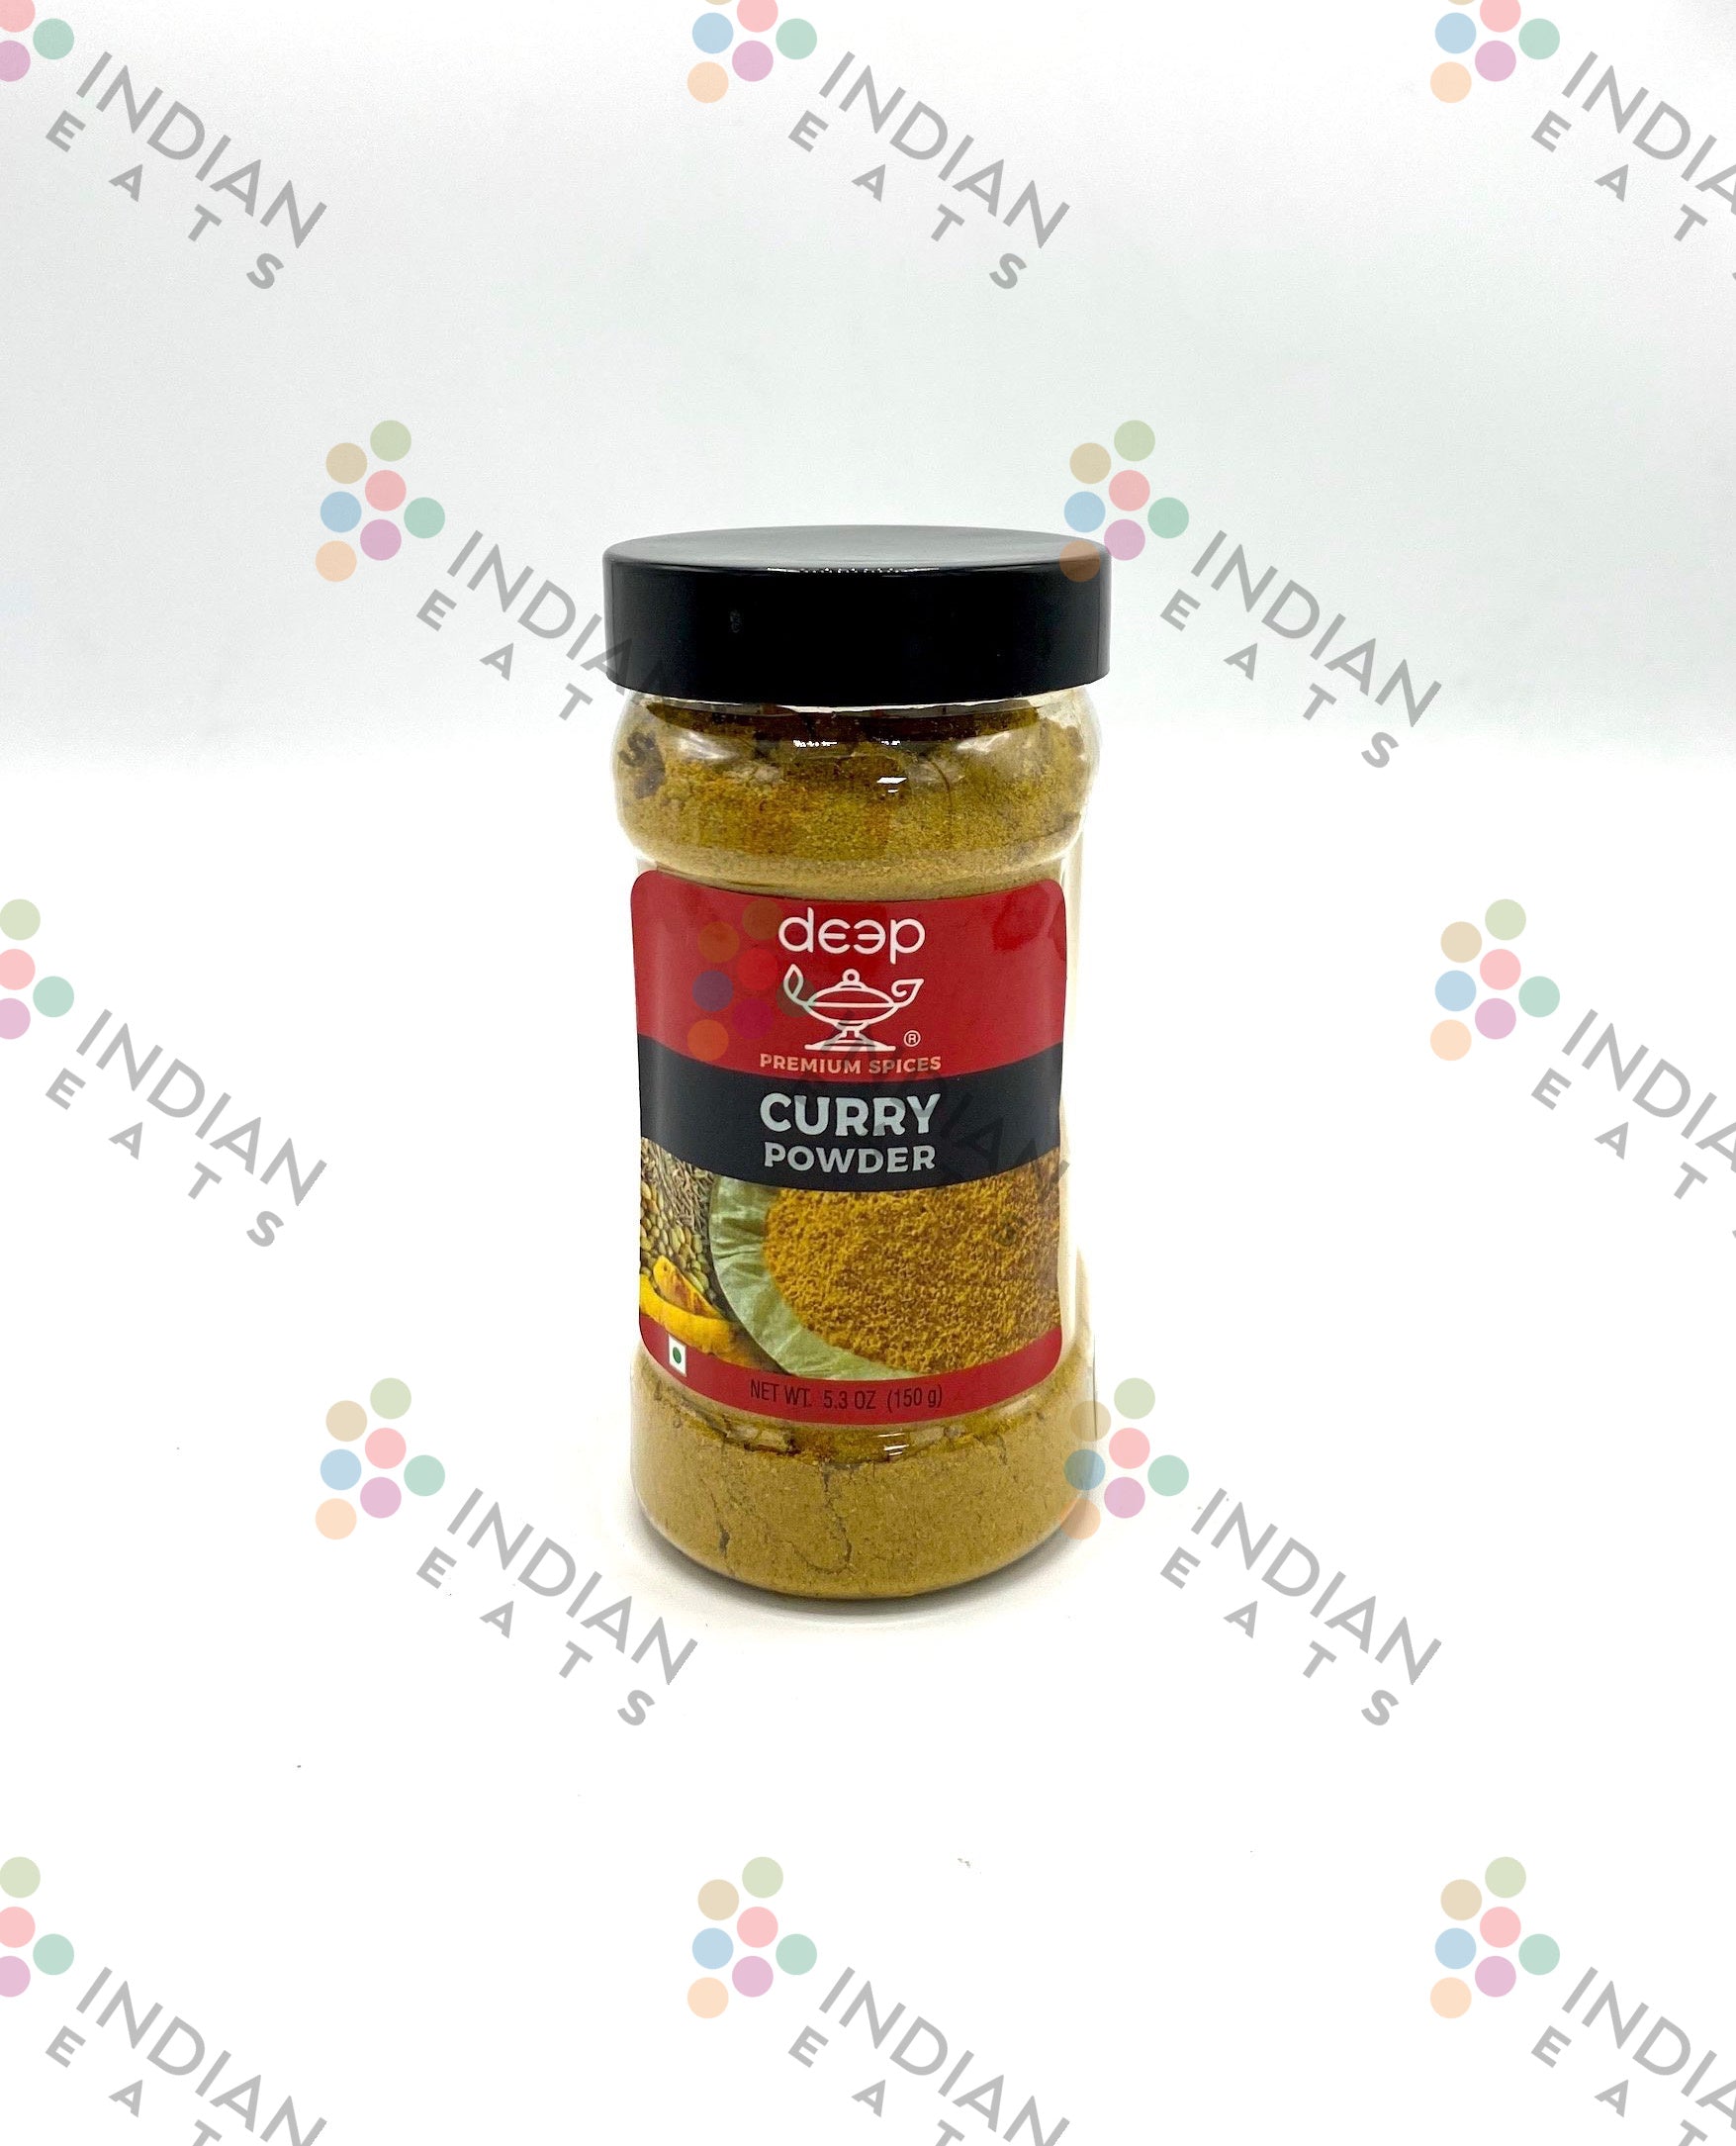 Deep Curry Powder in Jar